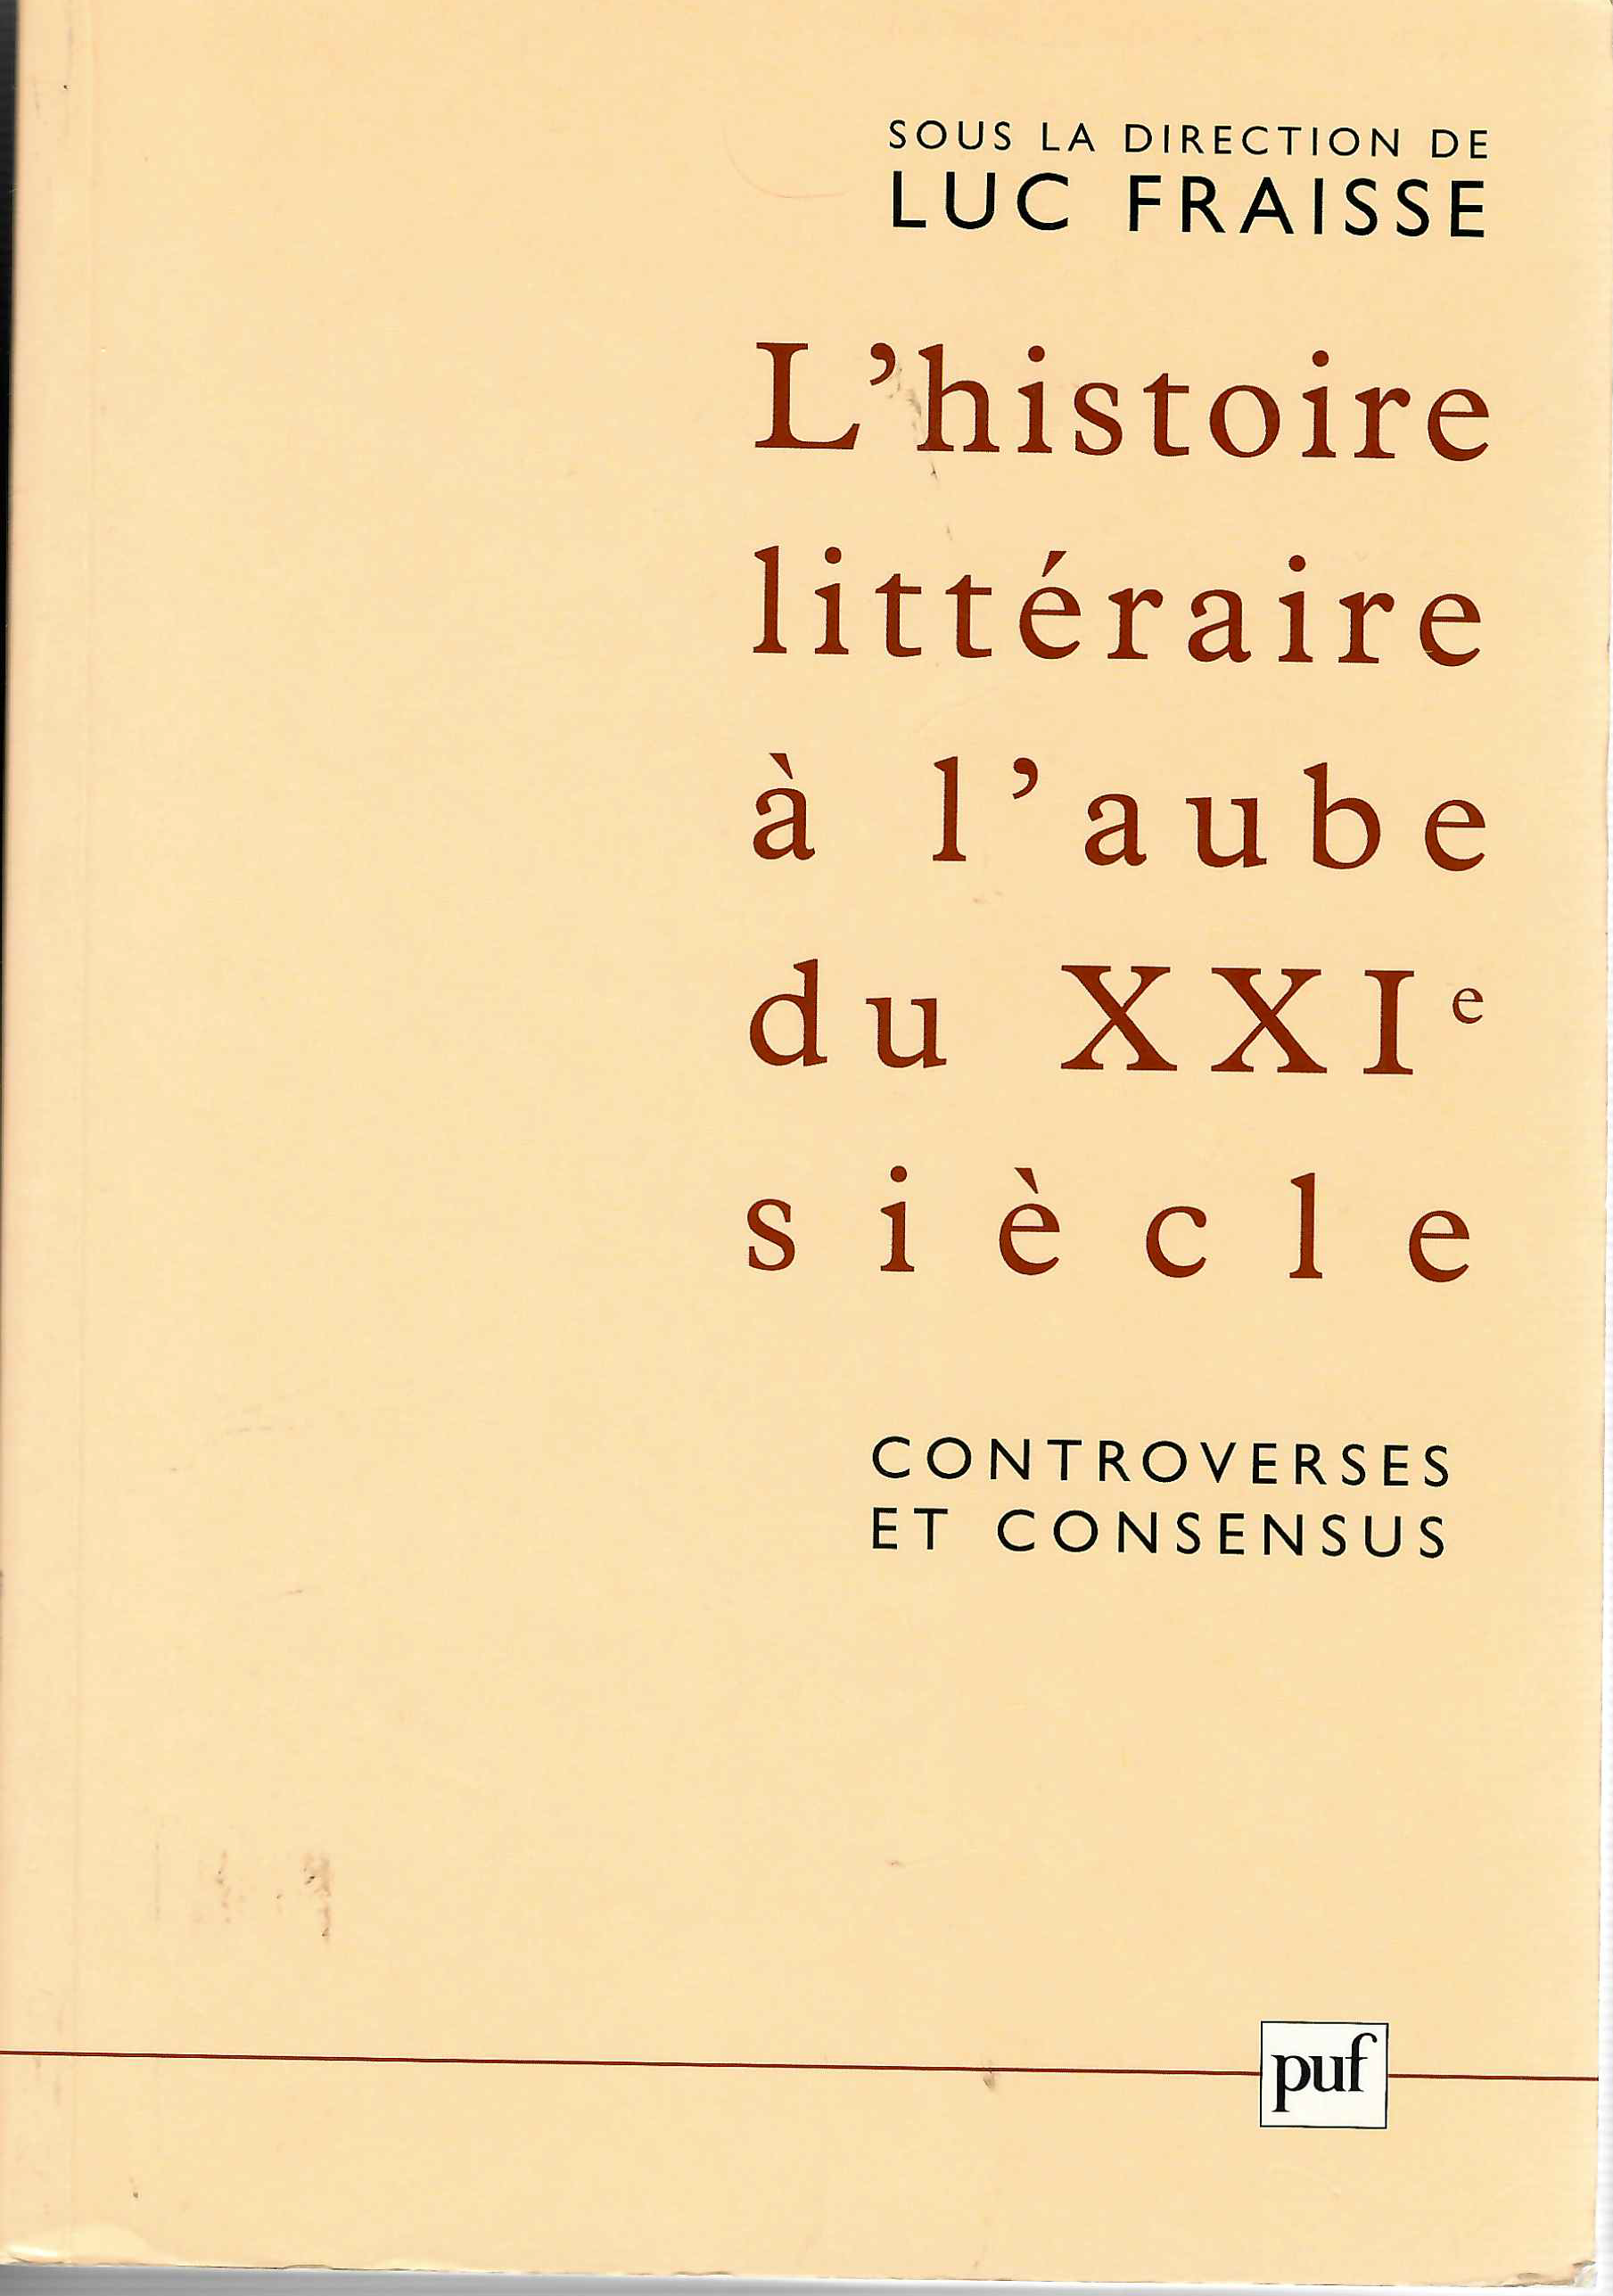 Imagen de portada del libro L'histoire littéraire à l'aube du XXI siècle